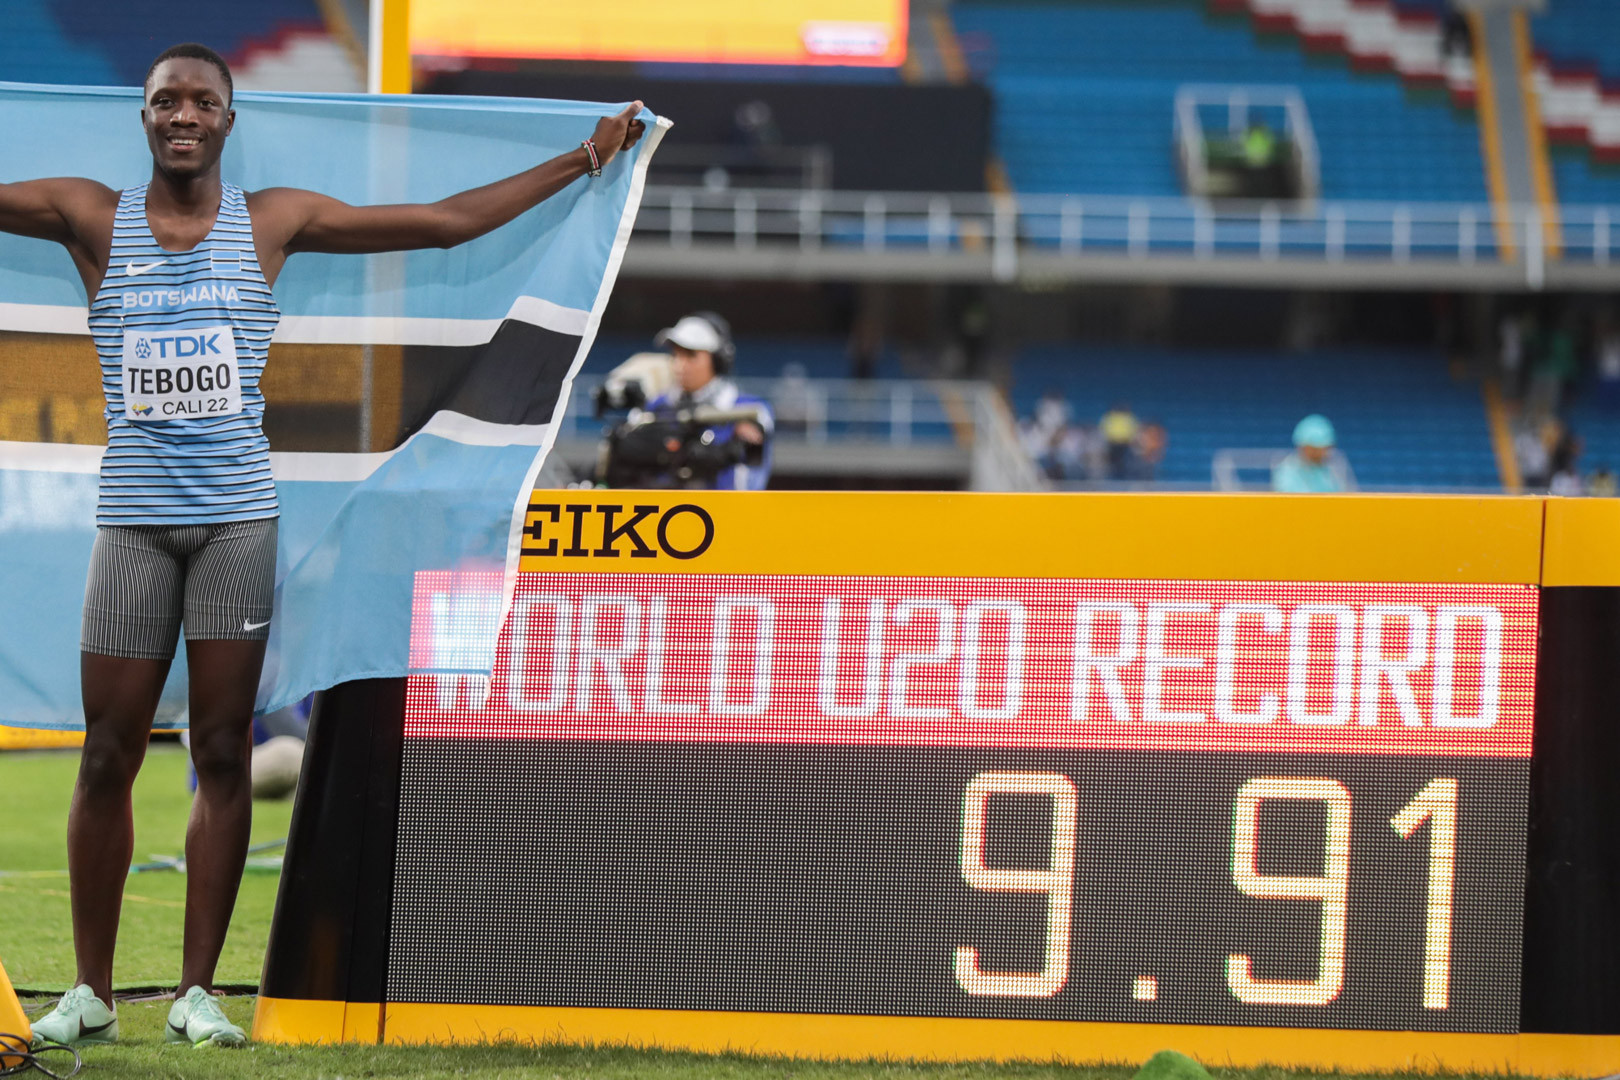 Letsile Tebogo: Truyền nhân Usain Bolt ở đường chạy 100 mét